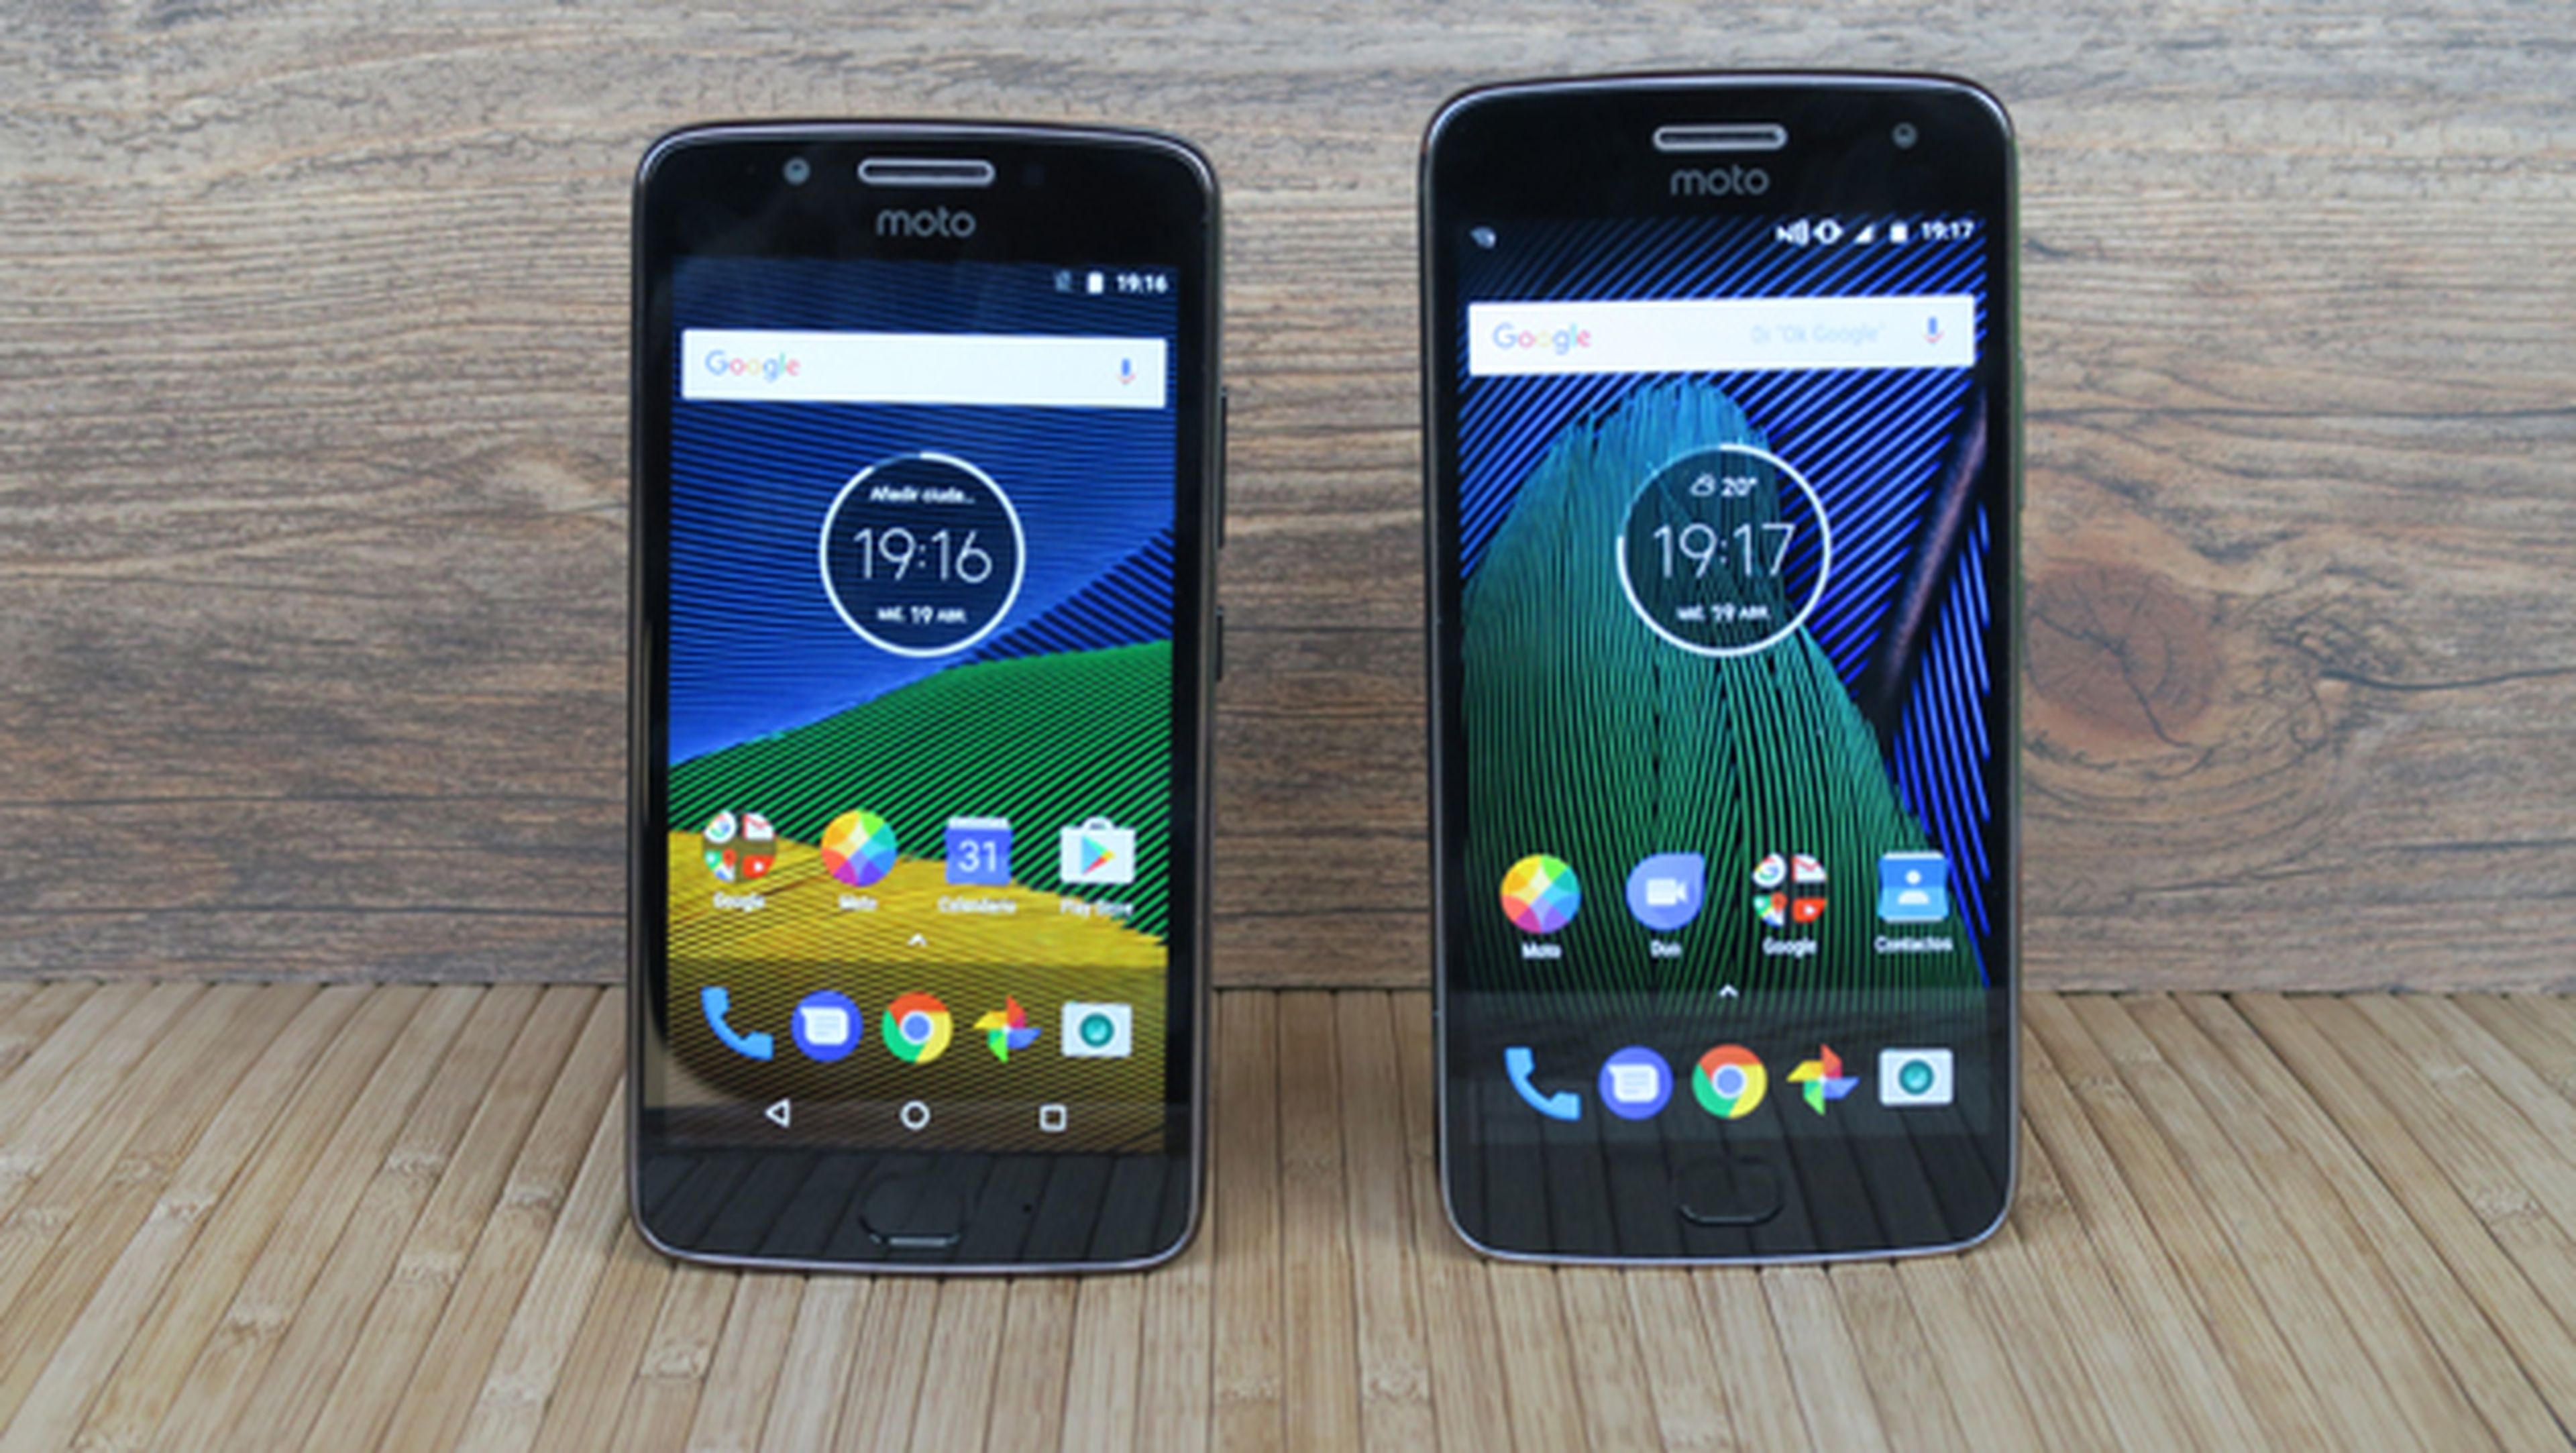 Comparativa entre el Motorola Moto G5 y el Moto G5 Plus